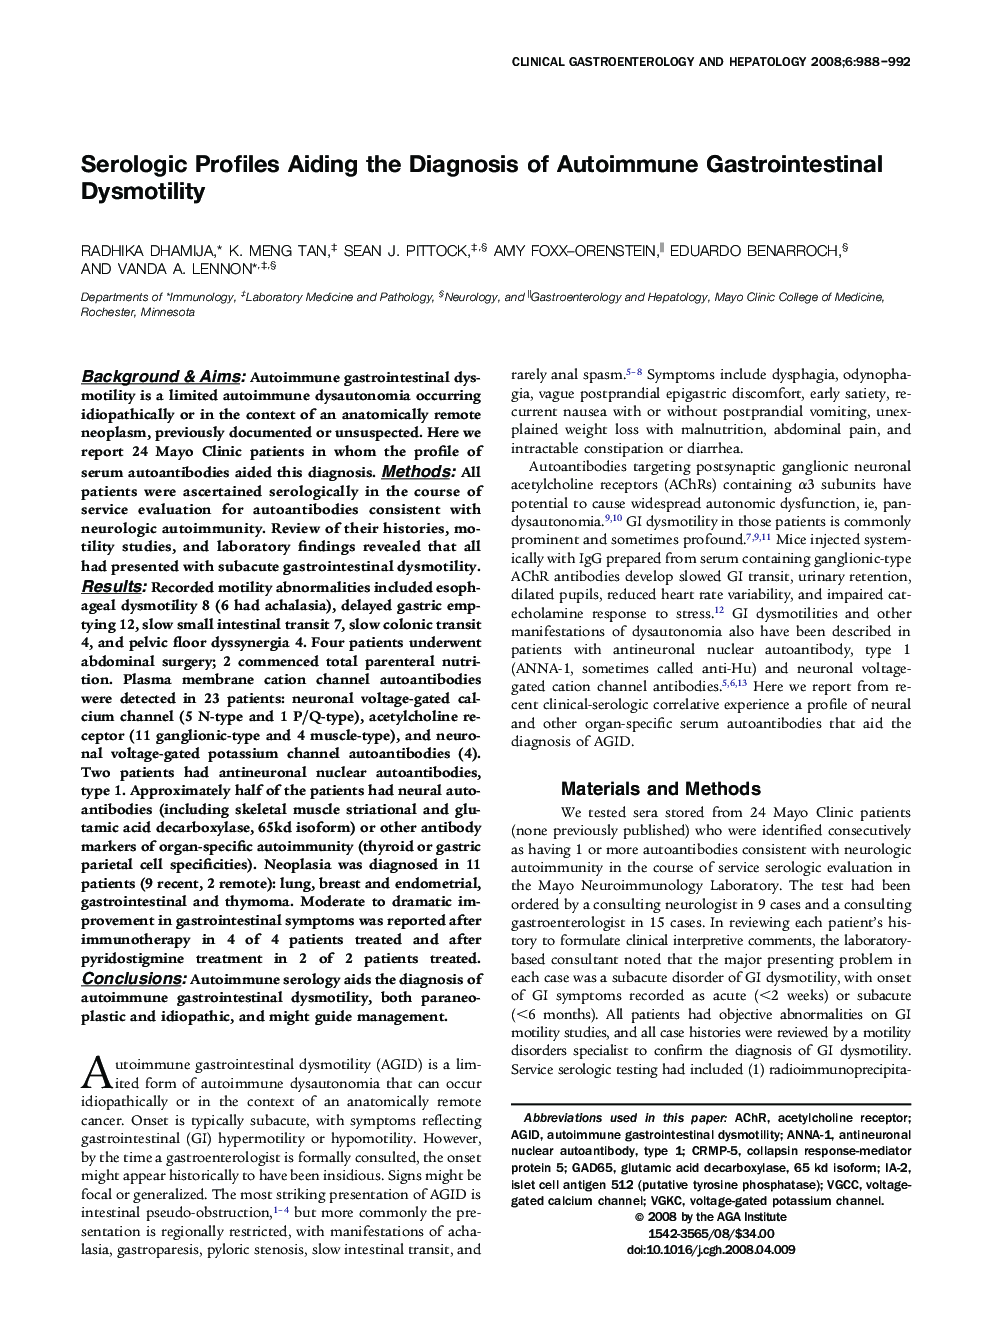 Serologic Profiles Aiding the Diagnosis of Autoimmune Gastrointestinal Dysmotility 